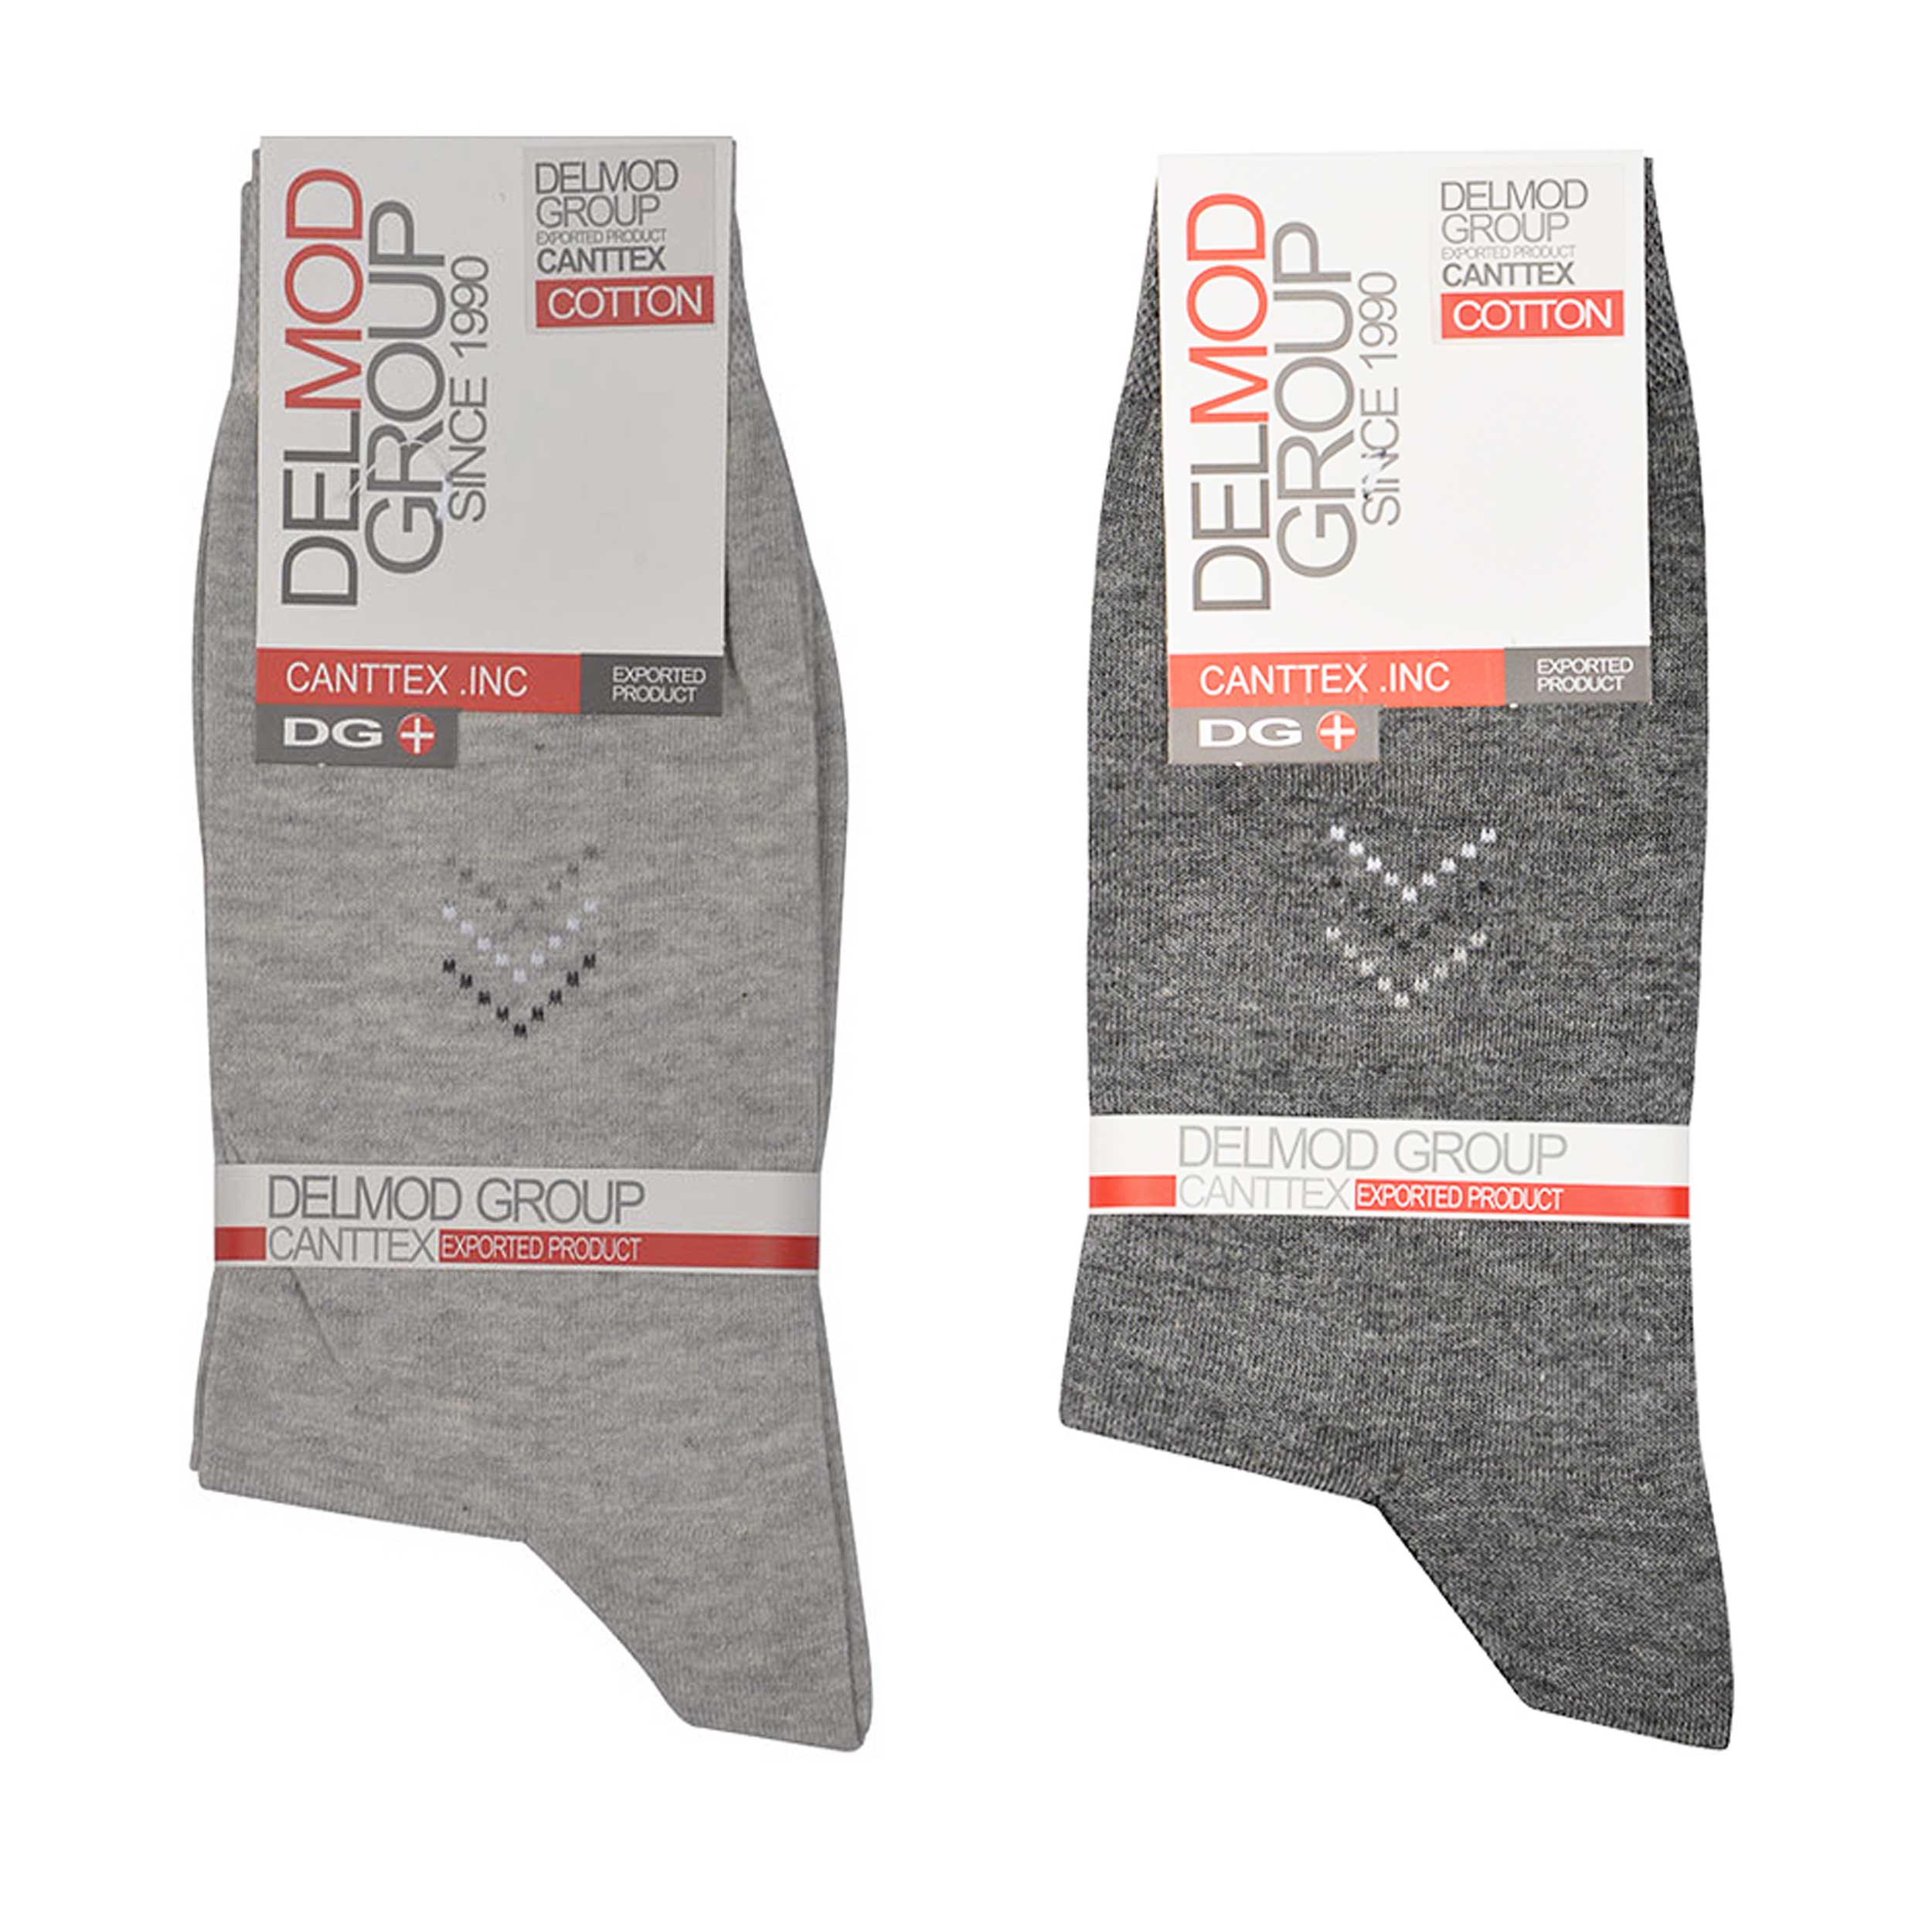 جوراب مردانه دل مد گروپ مدل 249022119 مجموعه 2 عددی نخ پنبه  رنگ خاکستری روشن